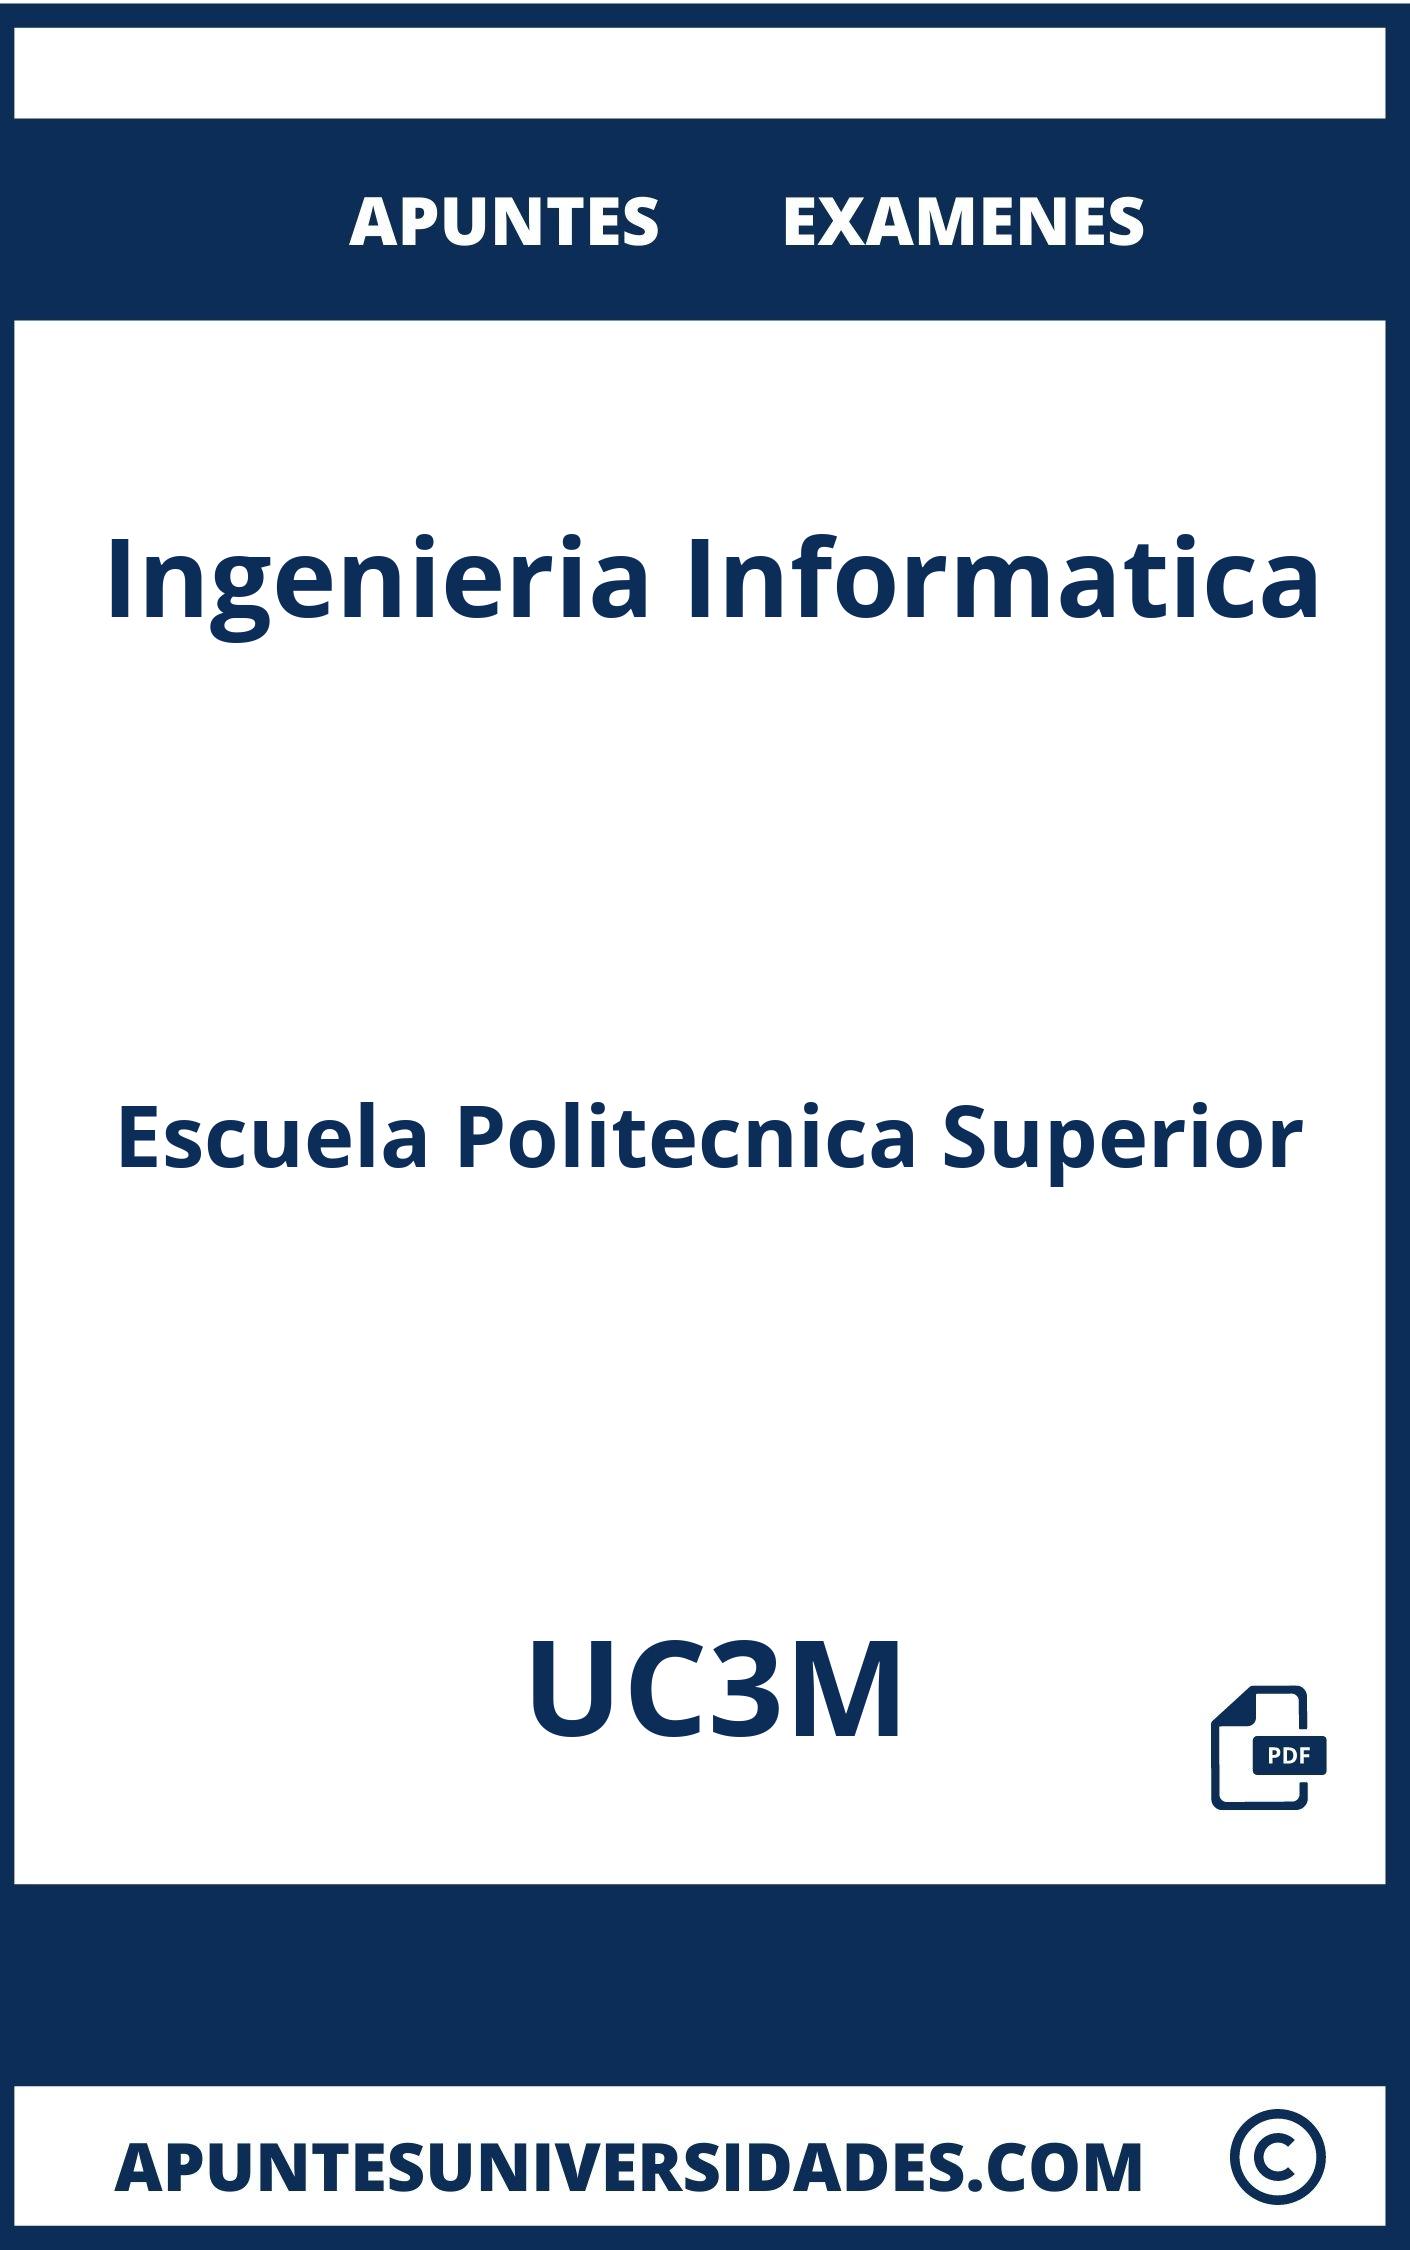 Ingenieria Informatica UC3M Examenes Apuntes